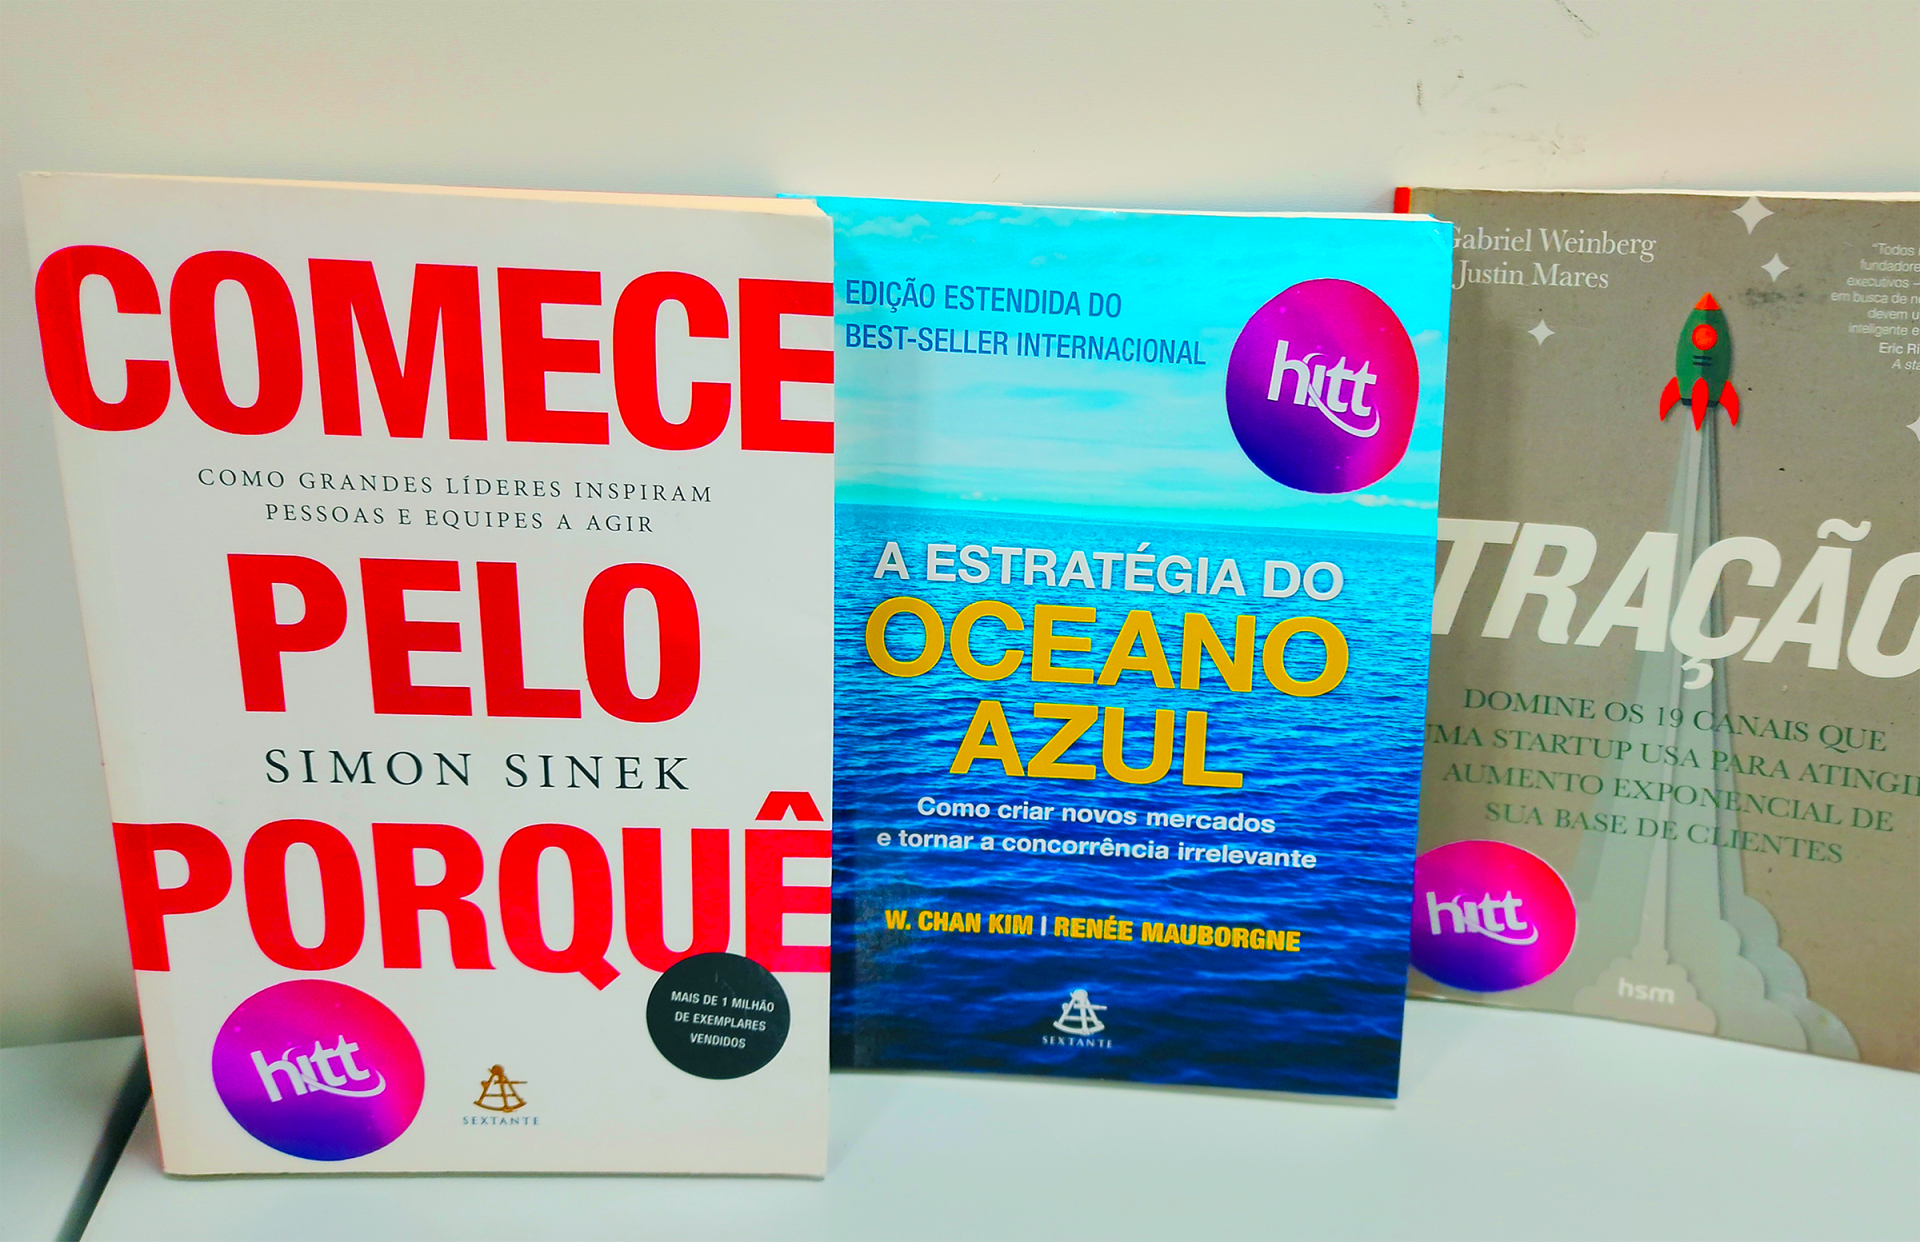 Livros doados ao HITT por Felipe Souza, voltados para o desenvolvimento de projetos de negócios e startups.